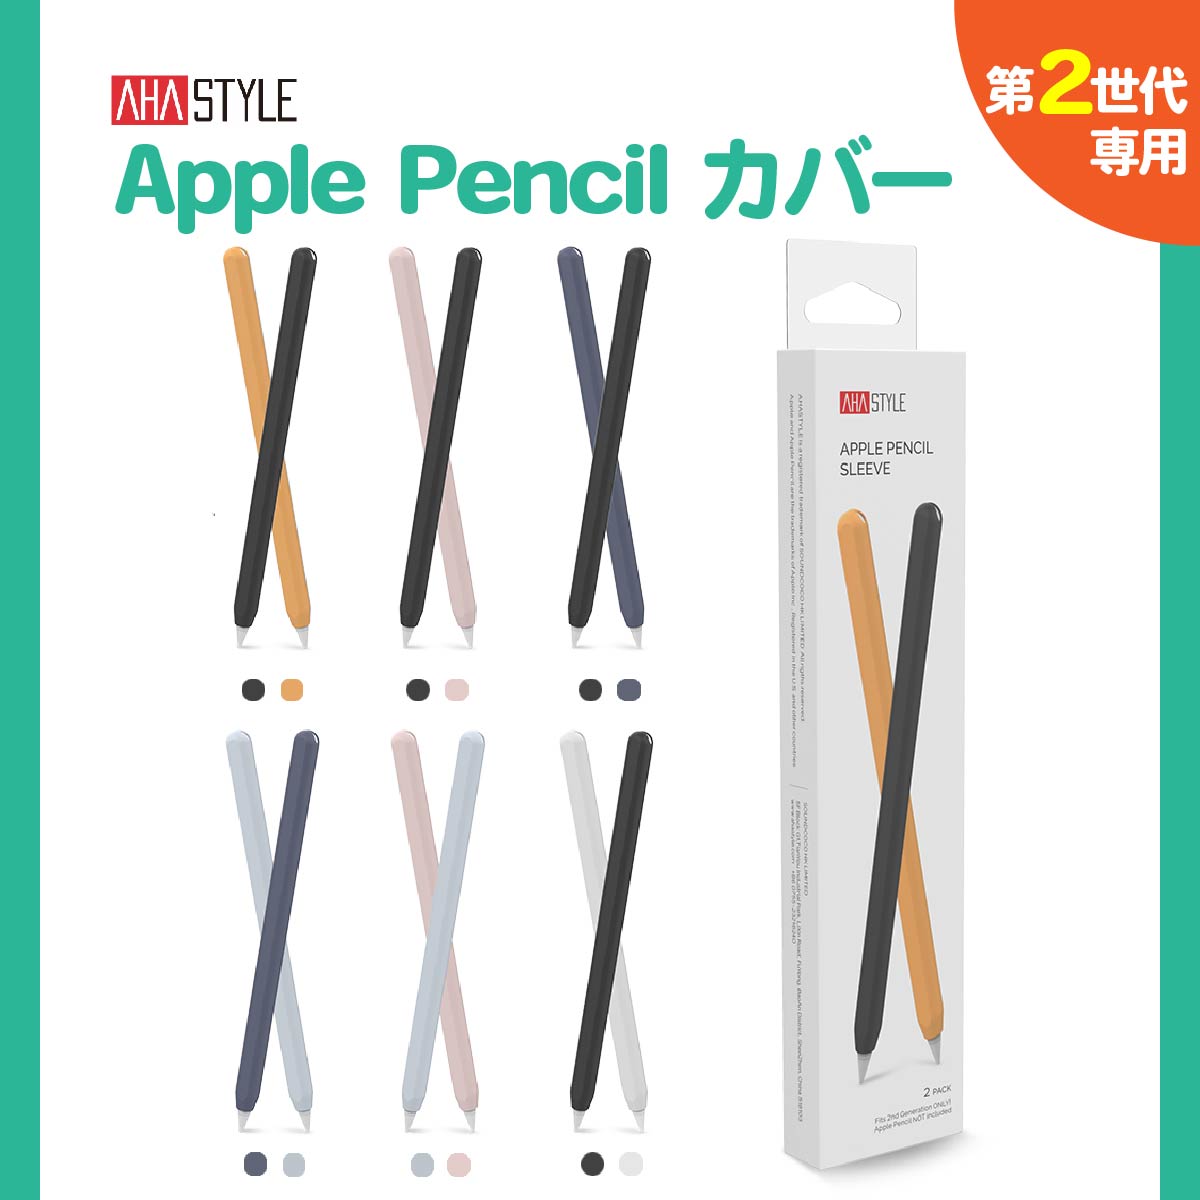 Apple Pencil 第二世代 カバー ケース 2本セット グリップ キャップ シリコン マグネット 充電可能 アップルペンシル 第2世代 ケース  かわいい 保護 傷防止 滑り止め ipad ペンシルケース 負担軽減 疲れ防止 フィット AHAStyle アハスタイル | モックストア